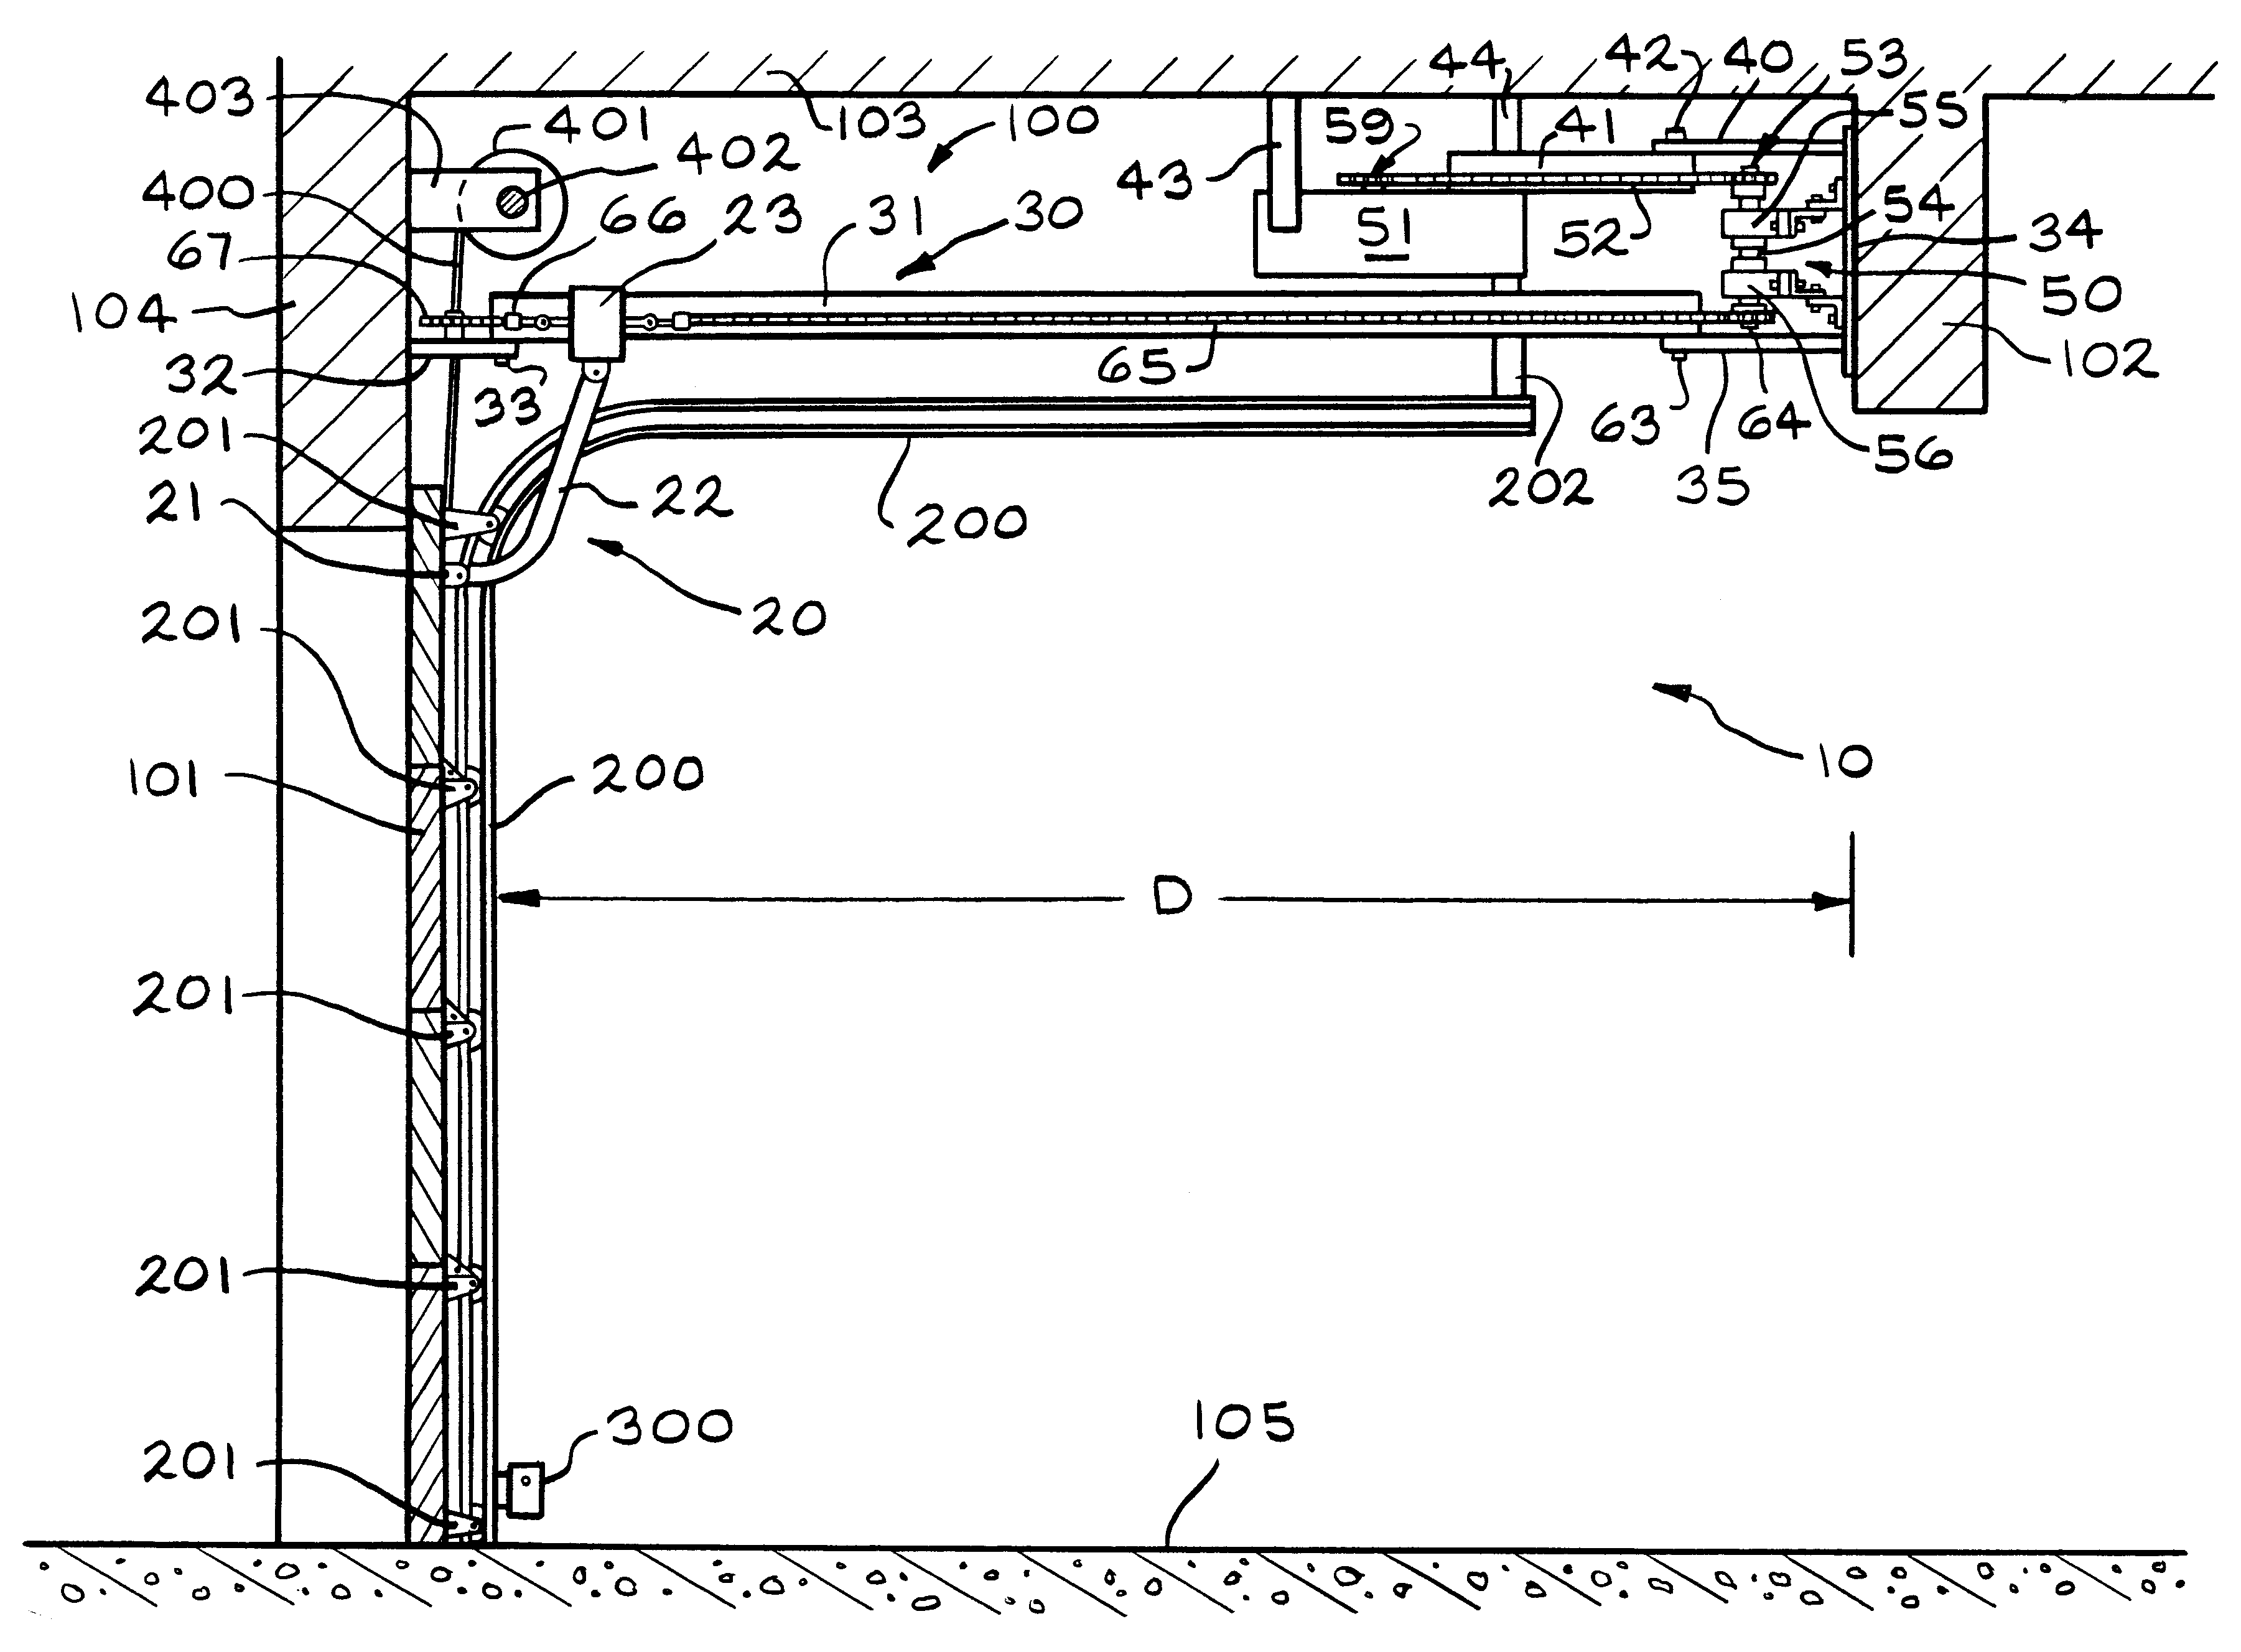 Door opener apparatus with power transfer mechanism